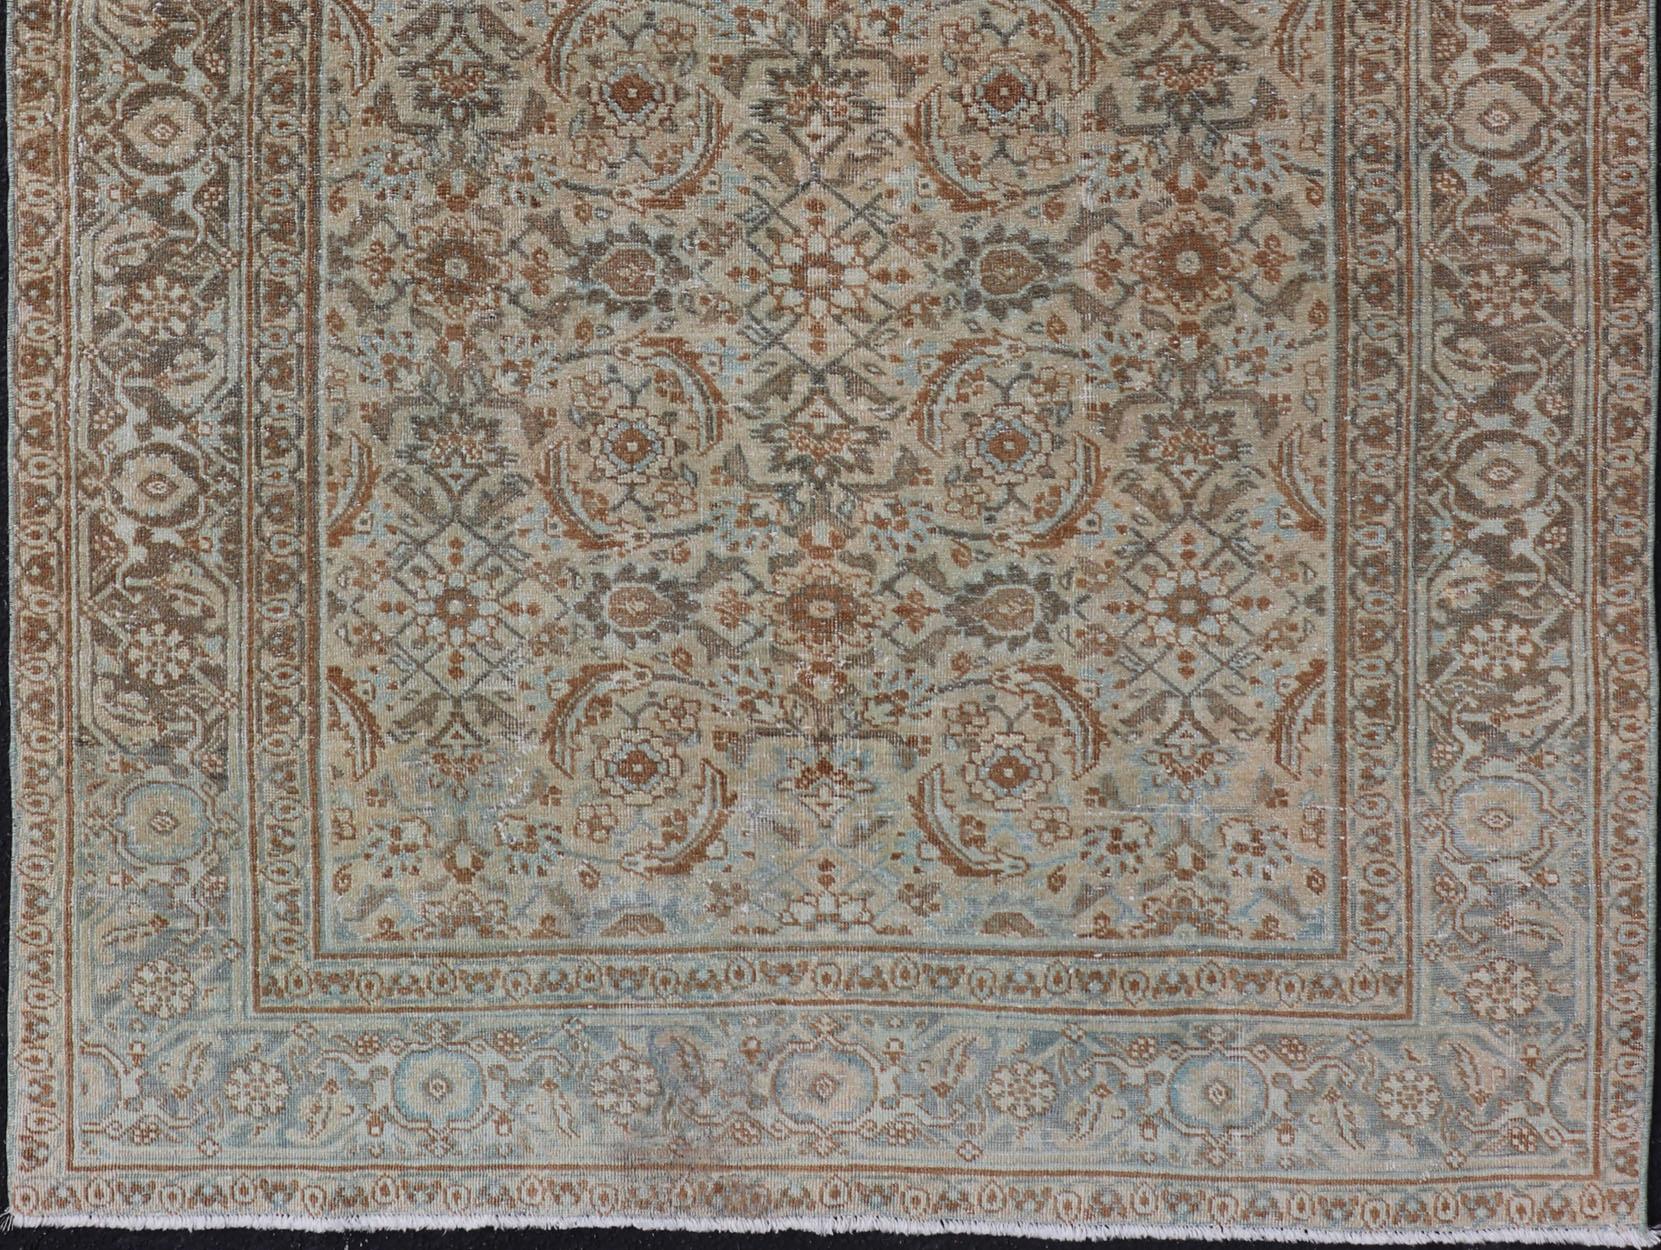 Ce tapis de Tabriz présente une zone de bordure relativement complexe et détaillée et un petit motif tribal répétitif entièrement clairsemé dans le champ central. Les tons de ce charmant tapis ne font que renforcer la patine, les crèmes plus douces